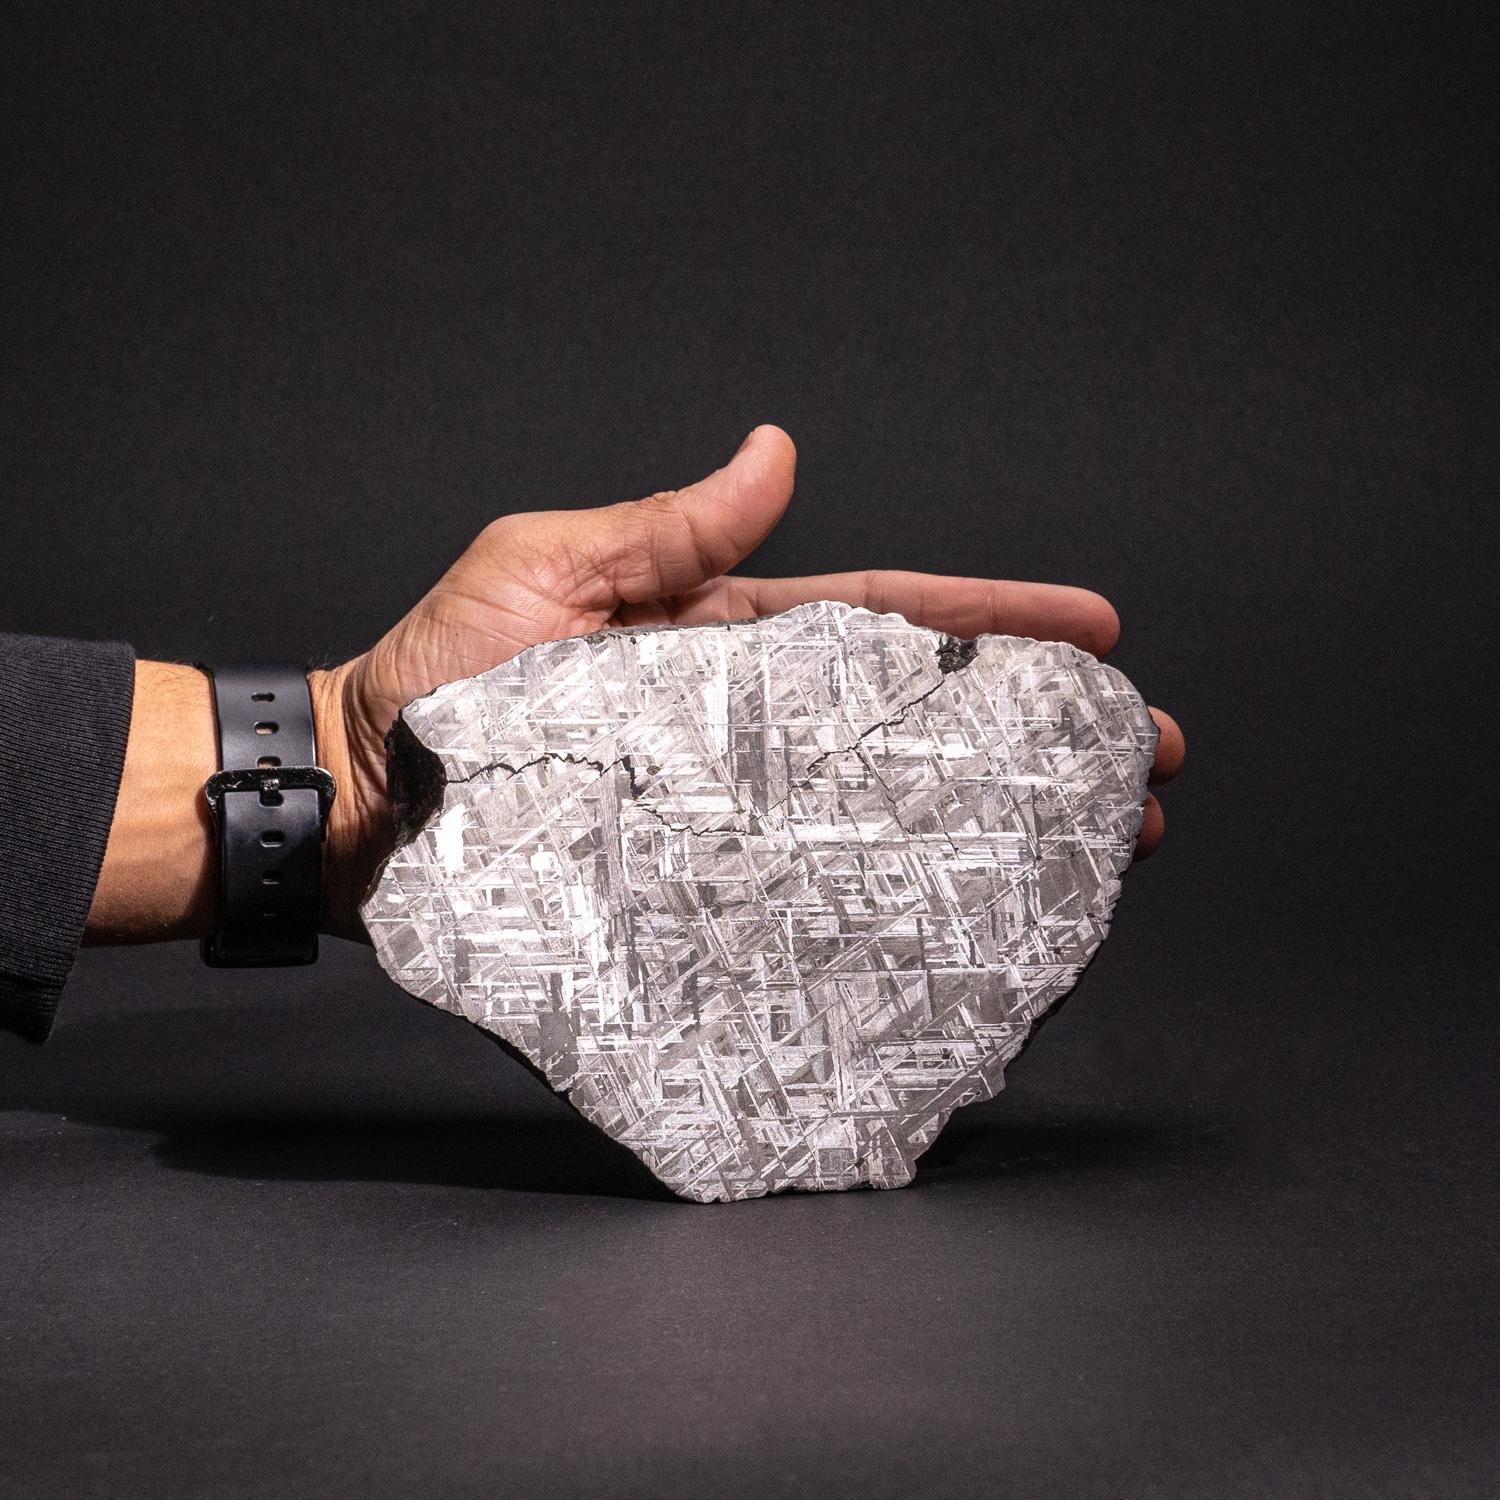 Cette météorite naturelle de Muonionalusta, dont l'une des faces a été tranchée et polie, est une pièce étonnante de l'histoire naturelle. Elle présente le magnifique motif métallique des Widmanstätten. La Muonionalusta est une météorite classée